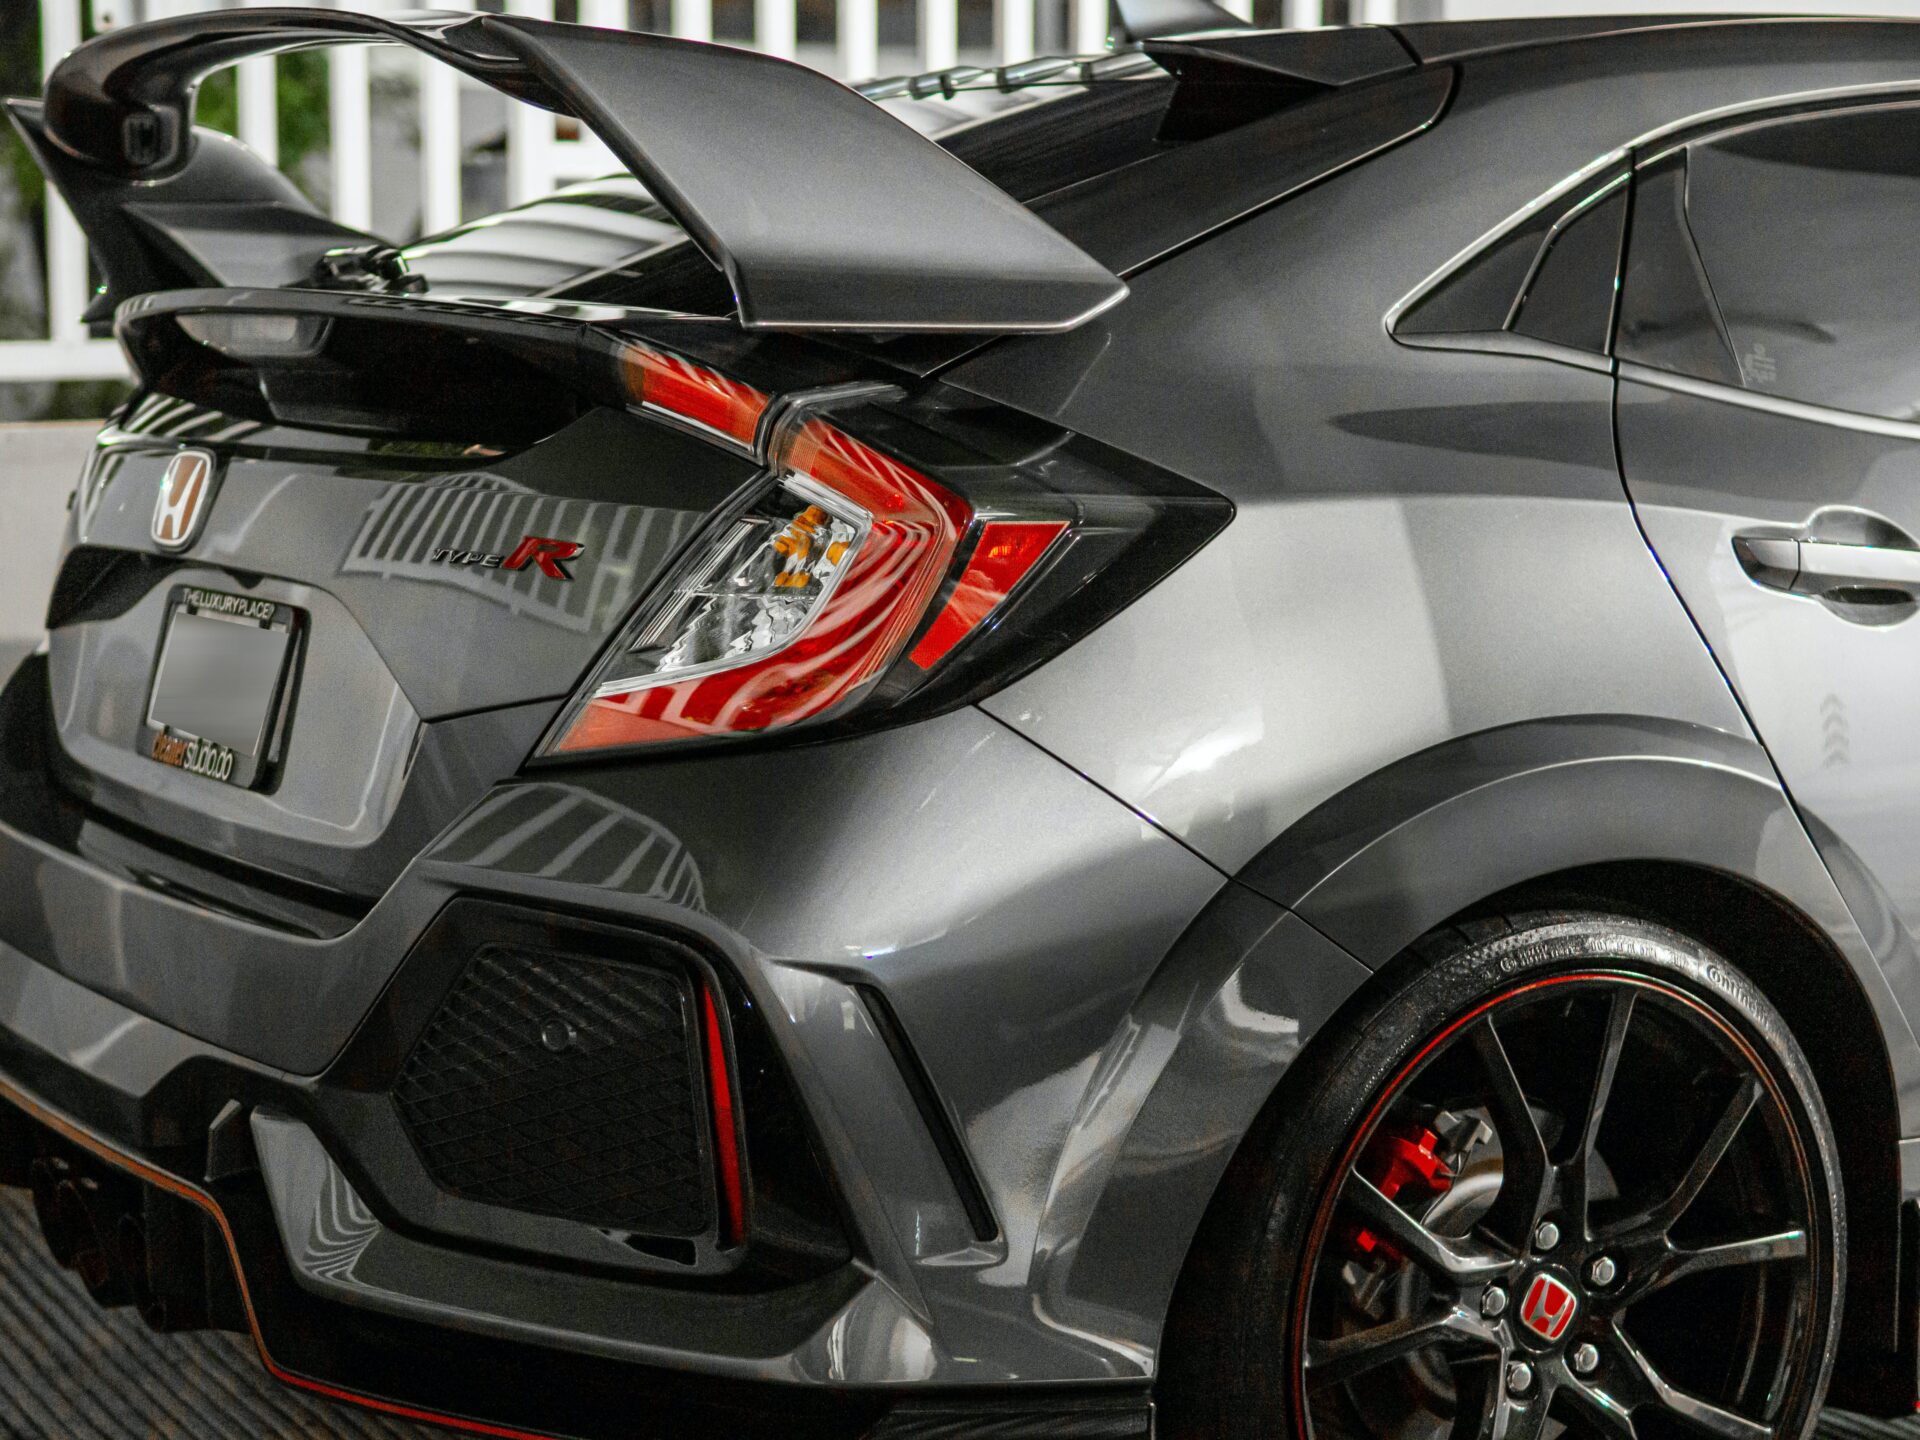 Прототип спортивного хэтчбека Honda Civic RS представили в Токио с МКПП